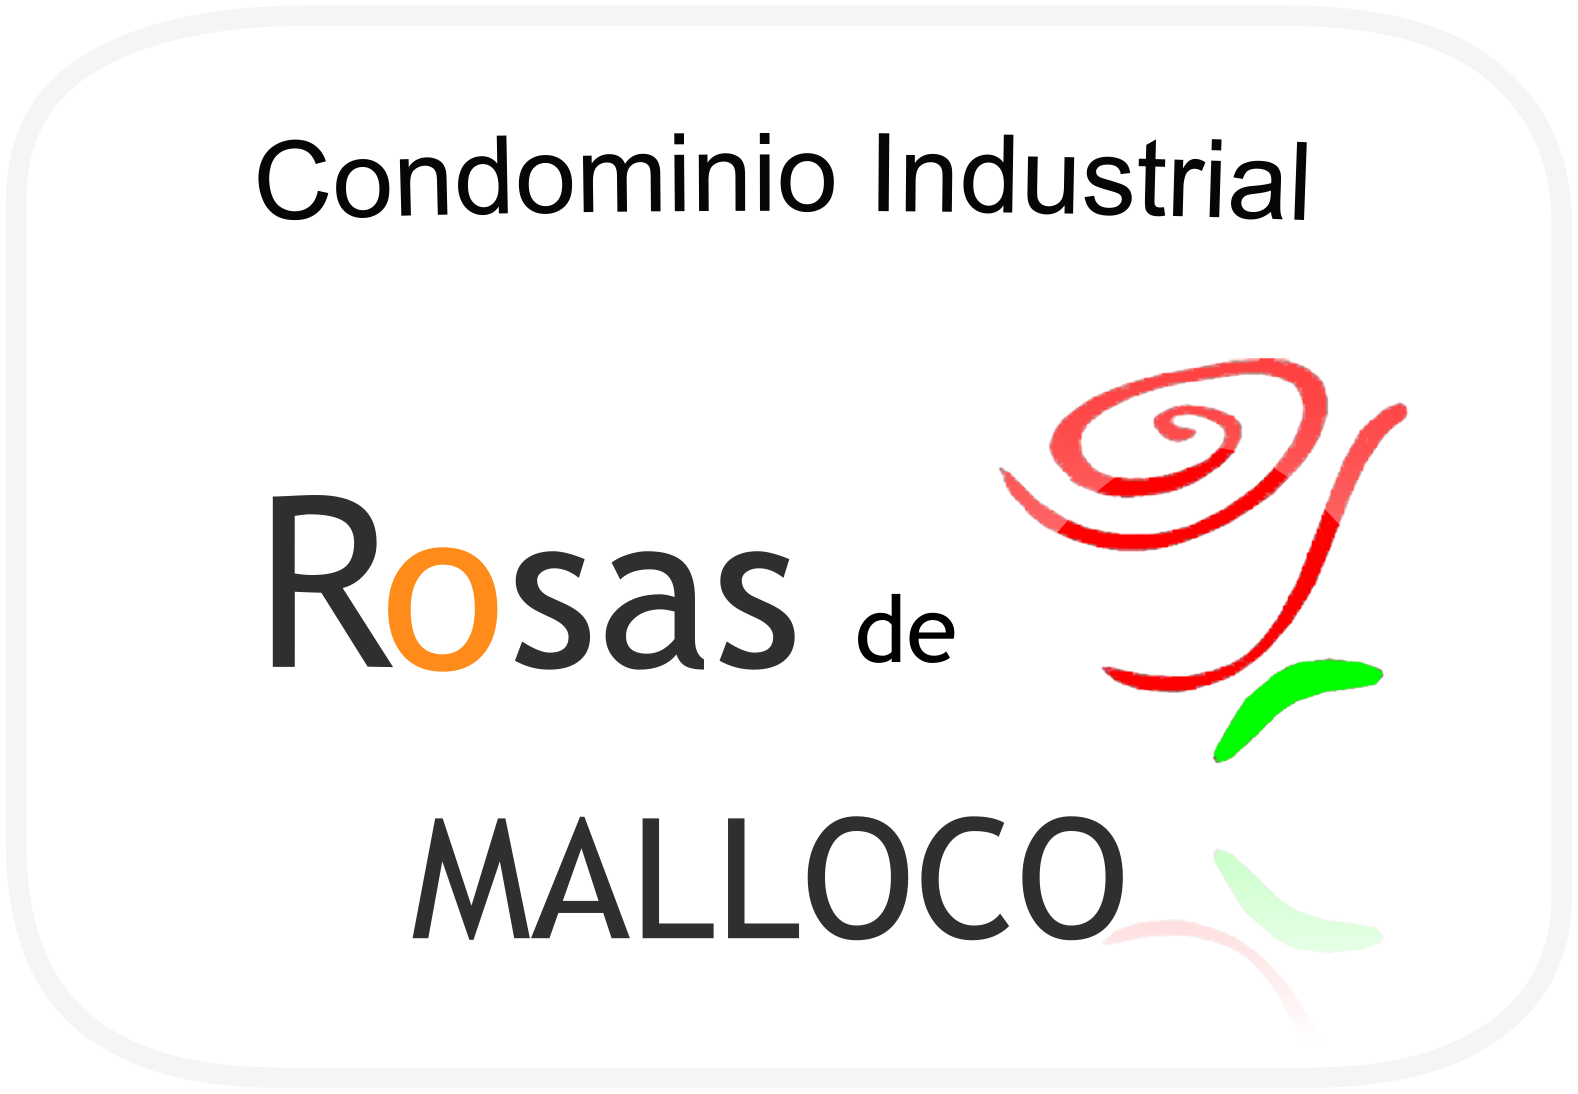 Condominio Industrial Rosas de Malloco